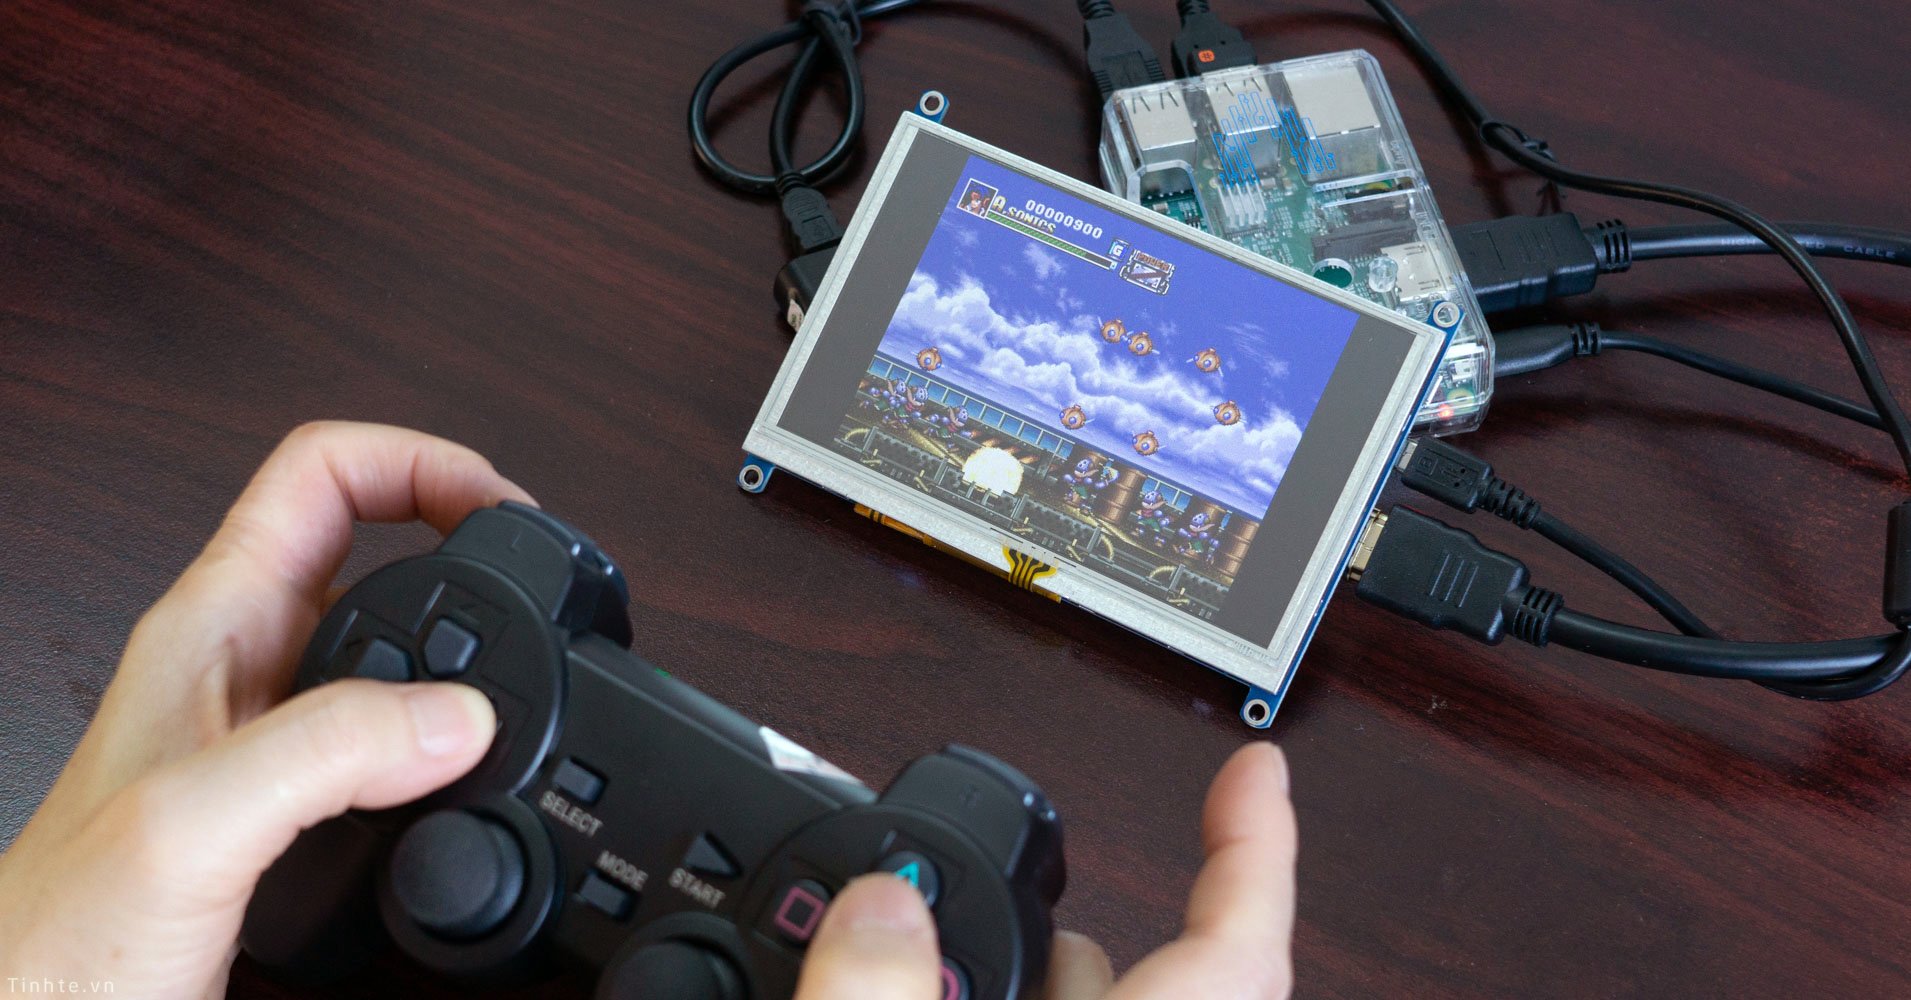 Tự làm "PlayStation Classic" để chơi game PS1, tổng chi phí tầm 1,6 triệu đồng